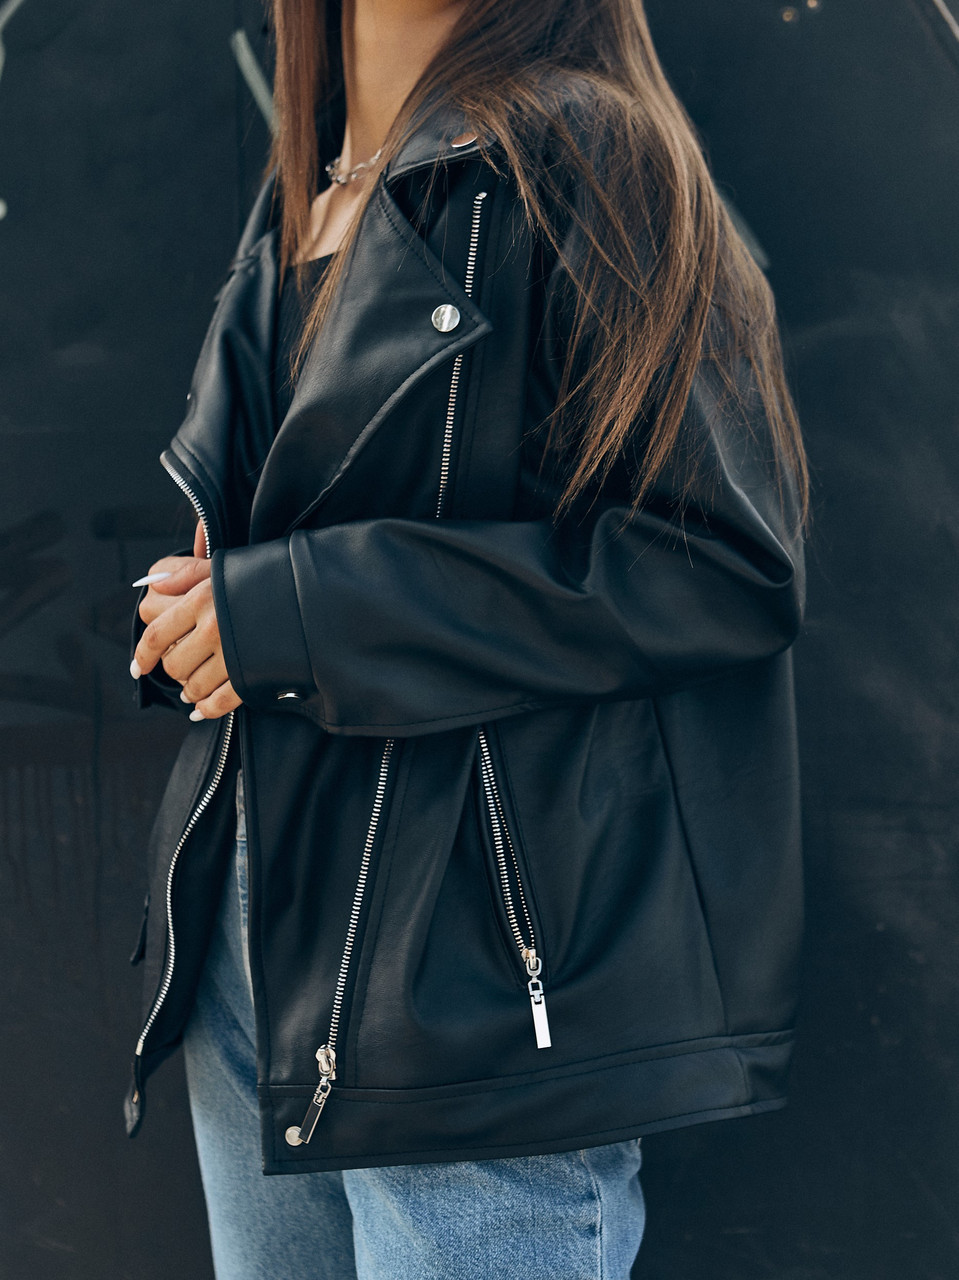 Косуха оверсайз женская, удлиненная черная бренд TUR модель Аманда, размер S, M TURWEAR - Фото 6